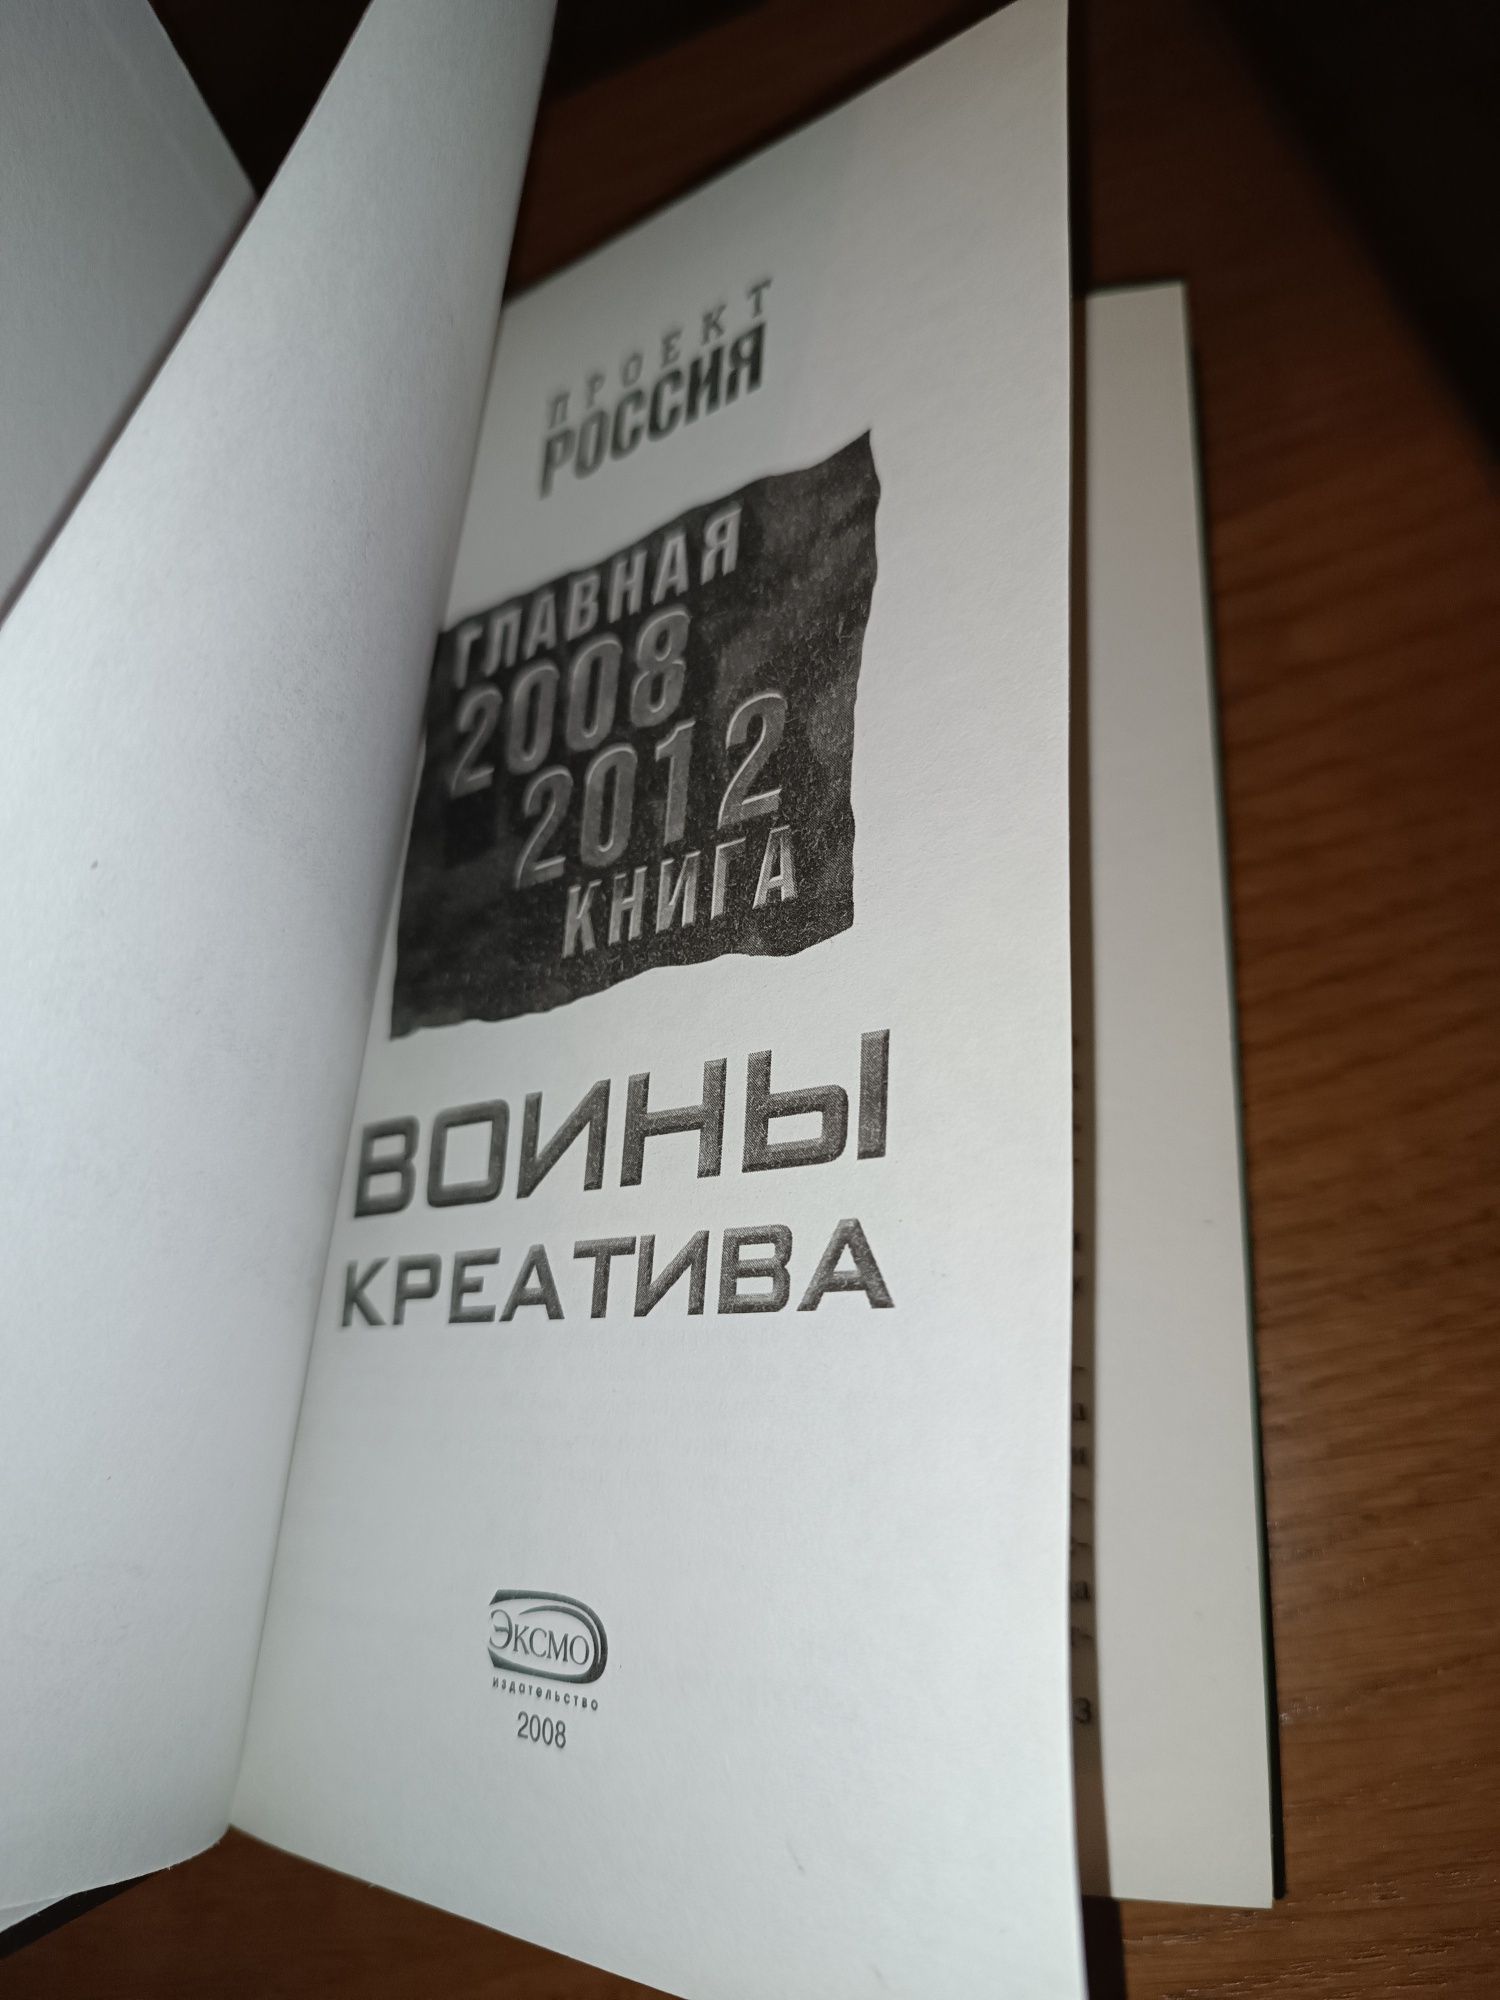 Книга Проект Россия Главная 2008-2012 книга Воины креатива